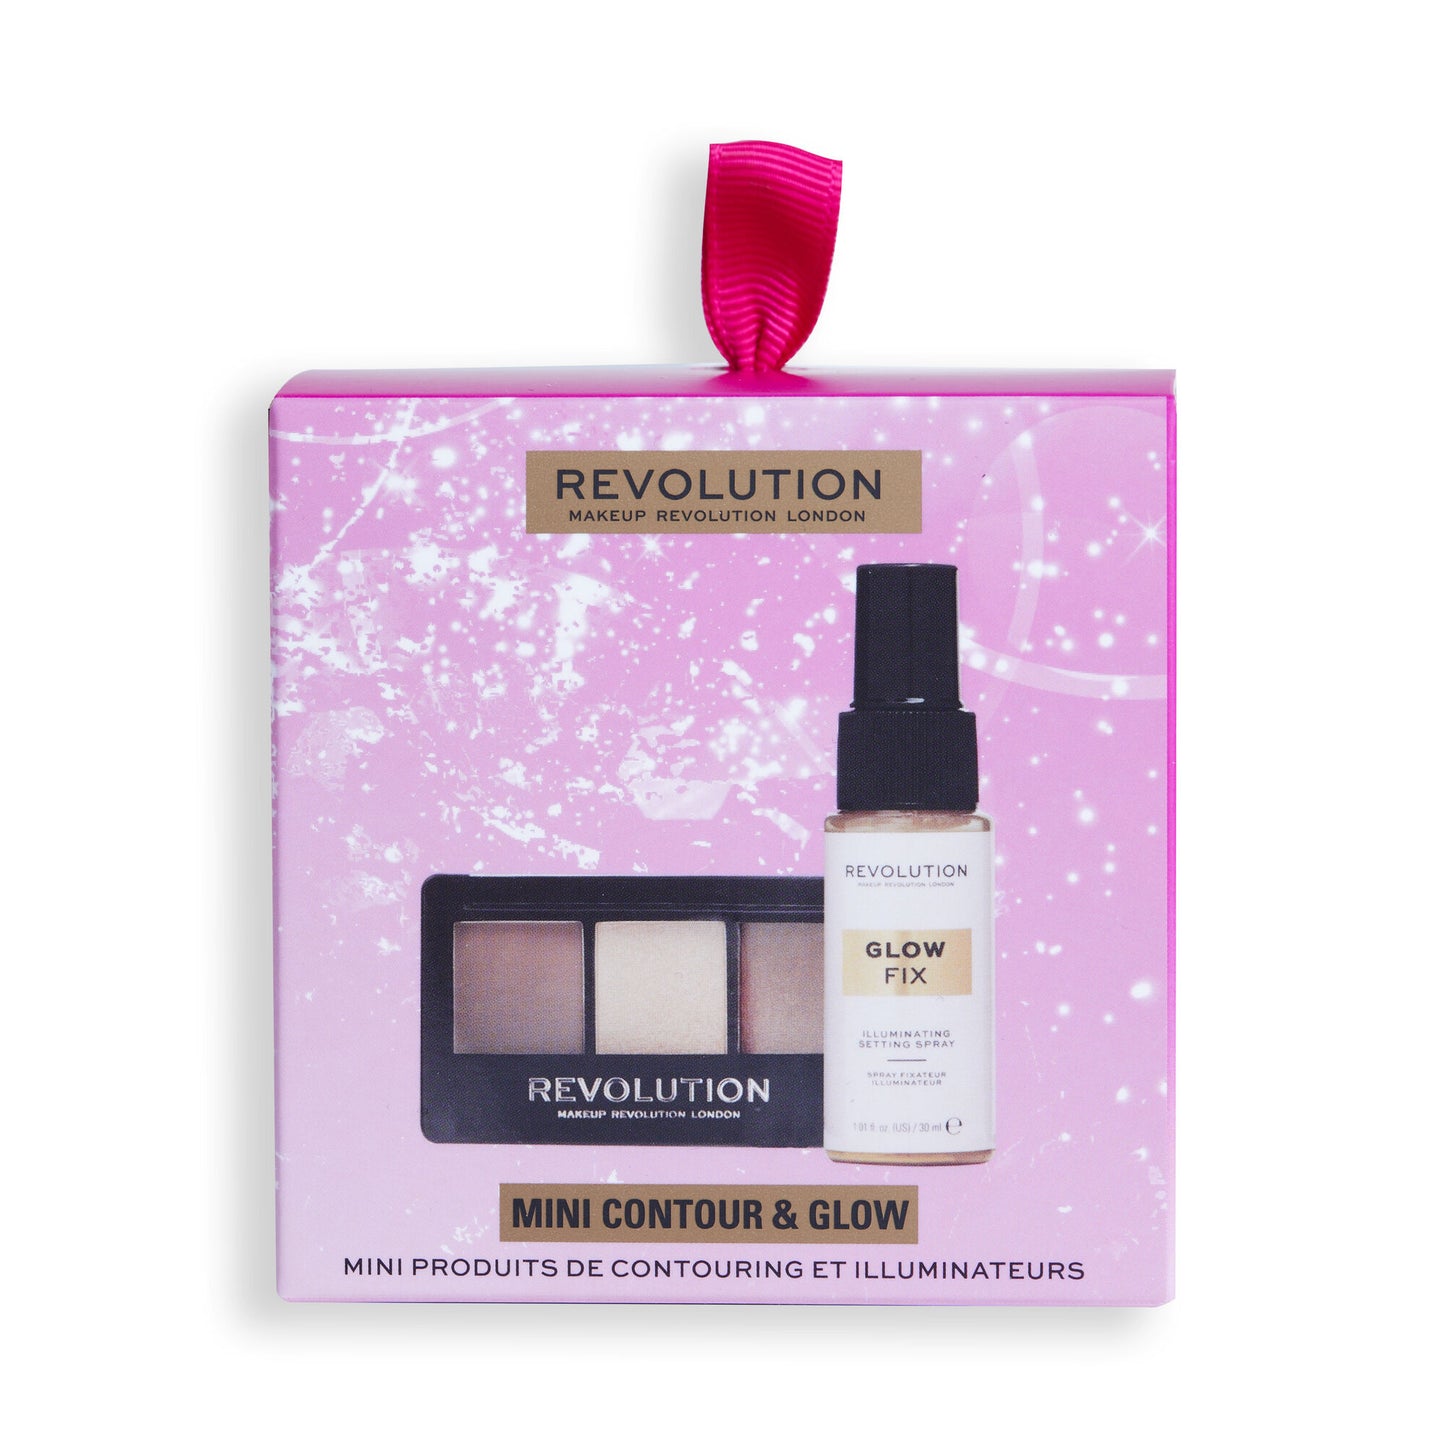 Revolution Mini Contour & Glow Gift Set